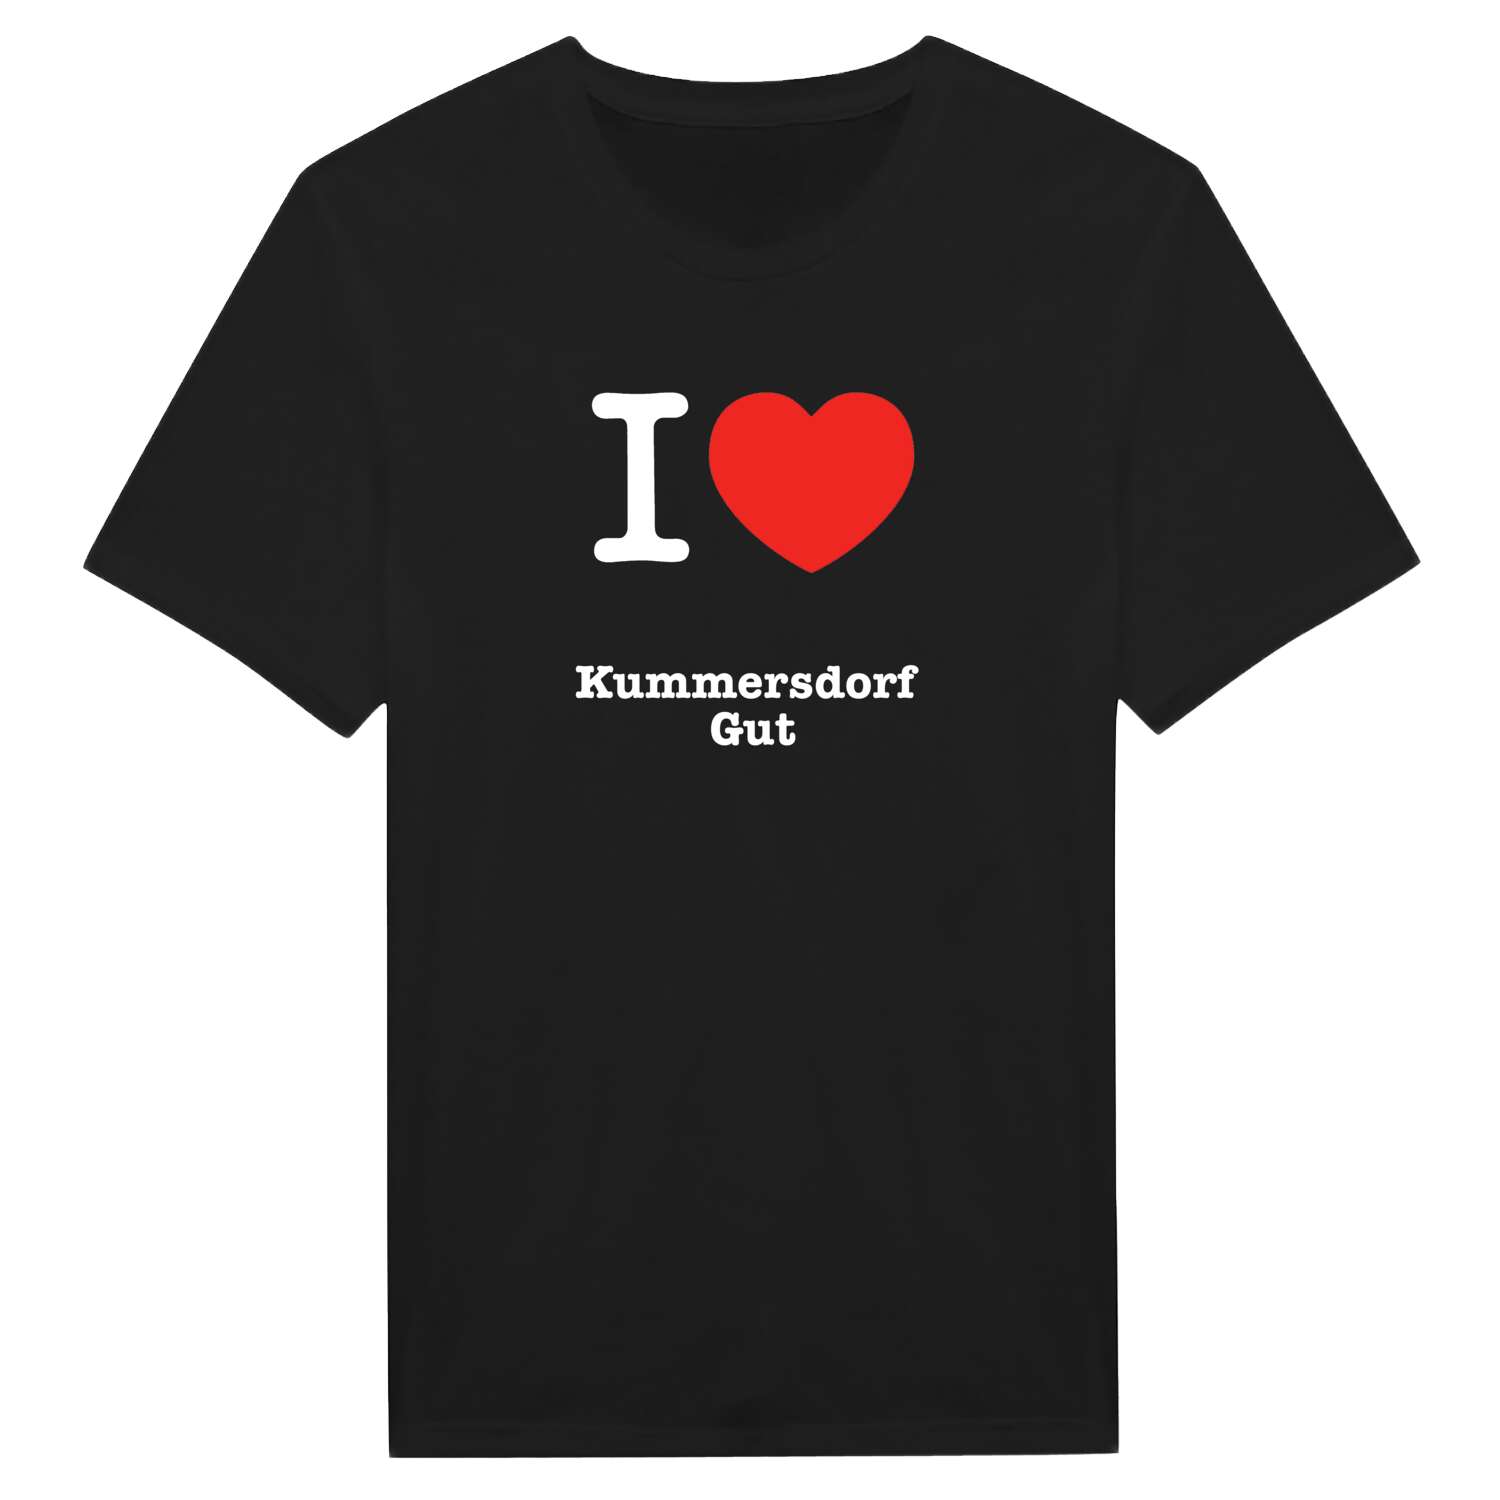 Kummersdorf Gut T-Shirt »I love«